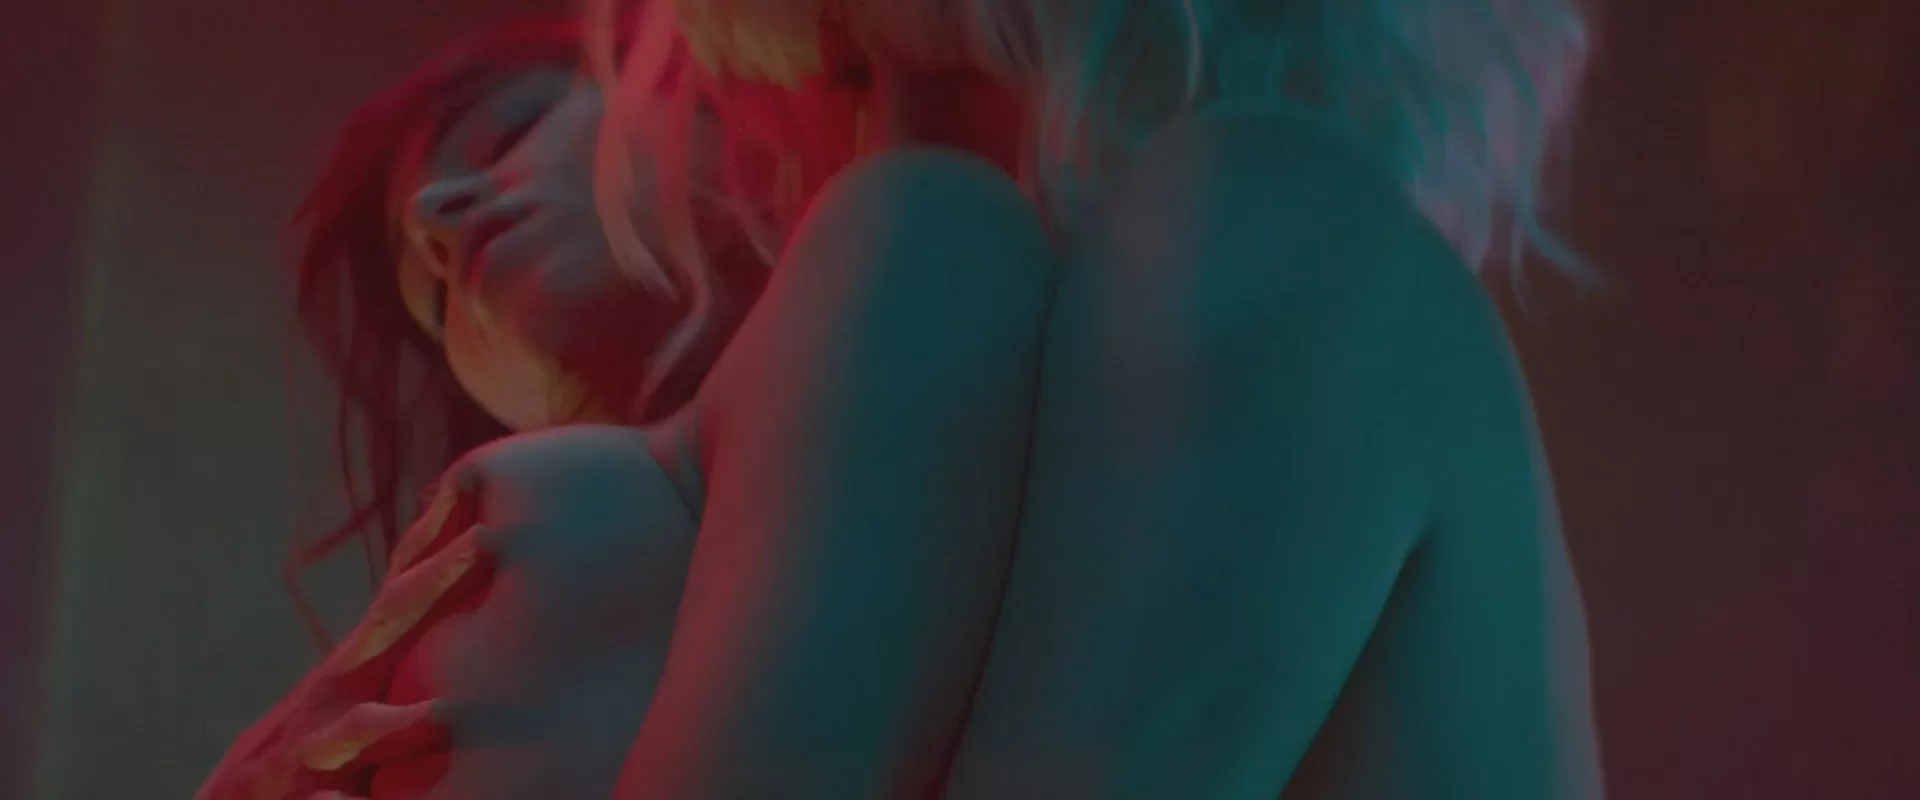 Sofia boutella atomic blonde sex scene